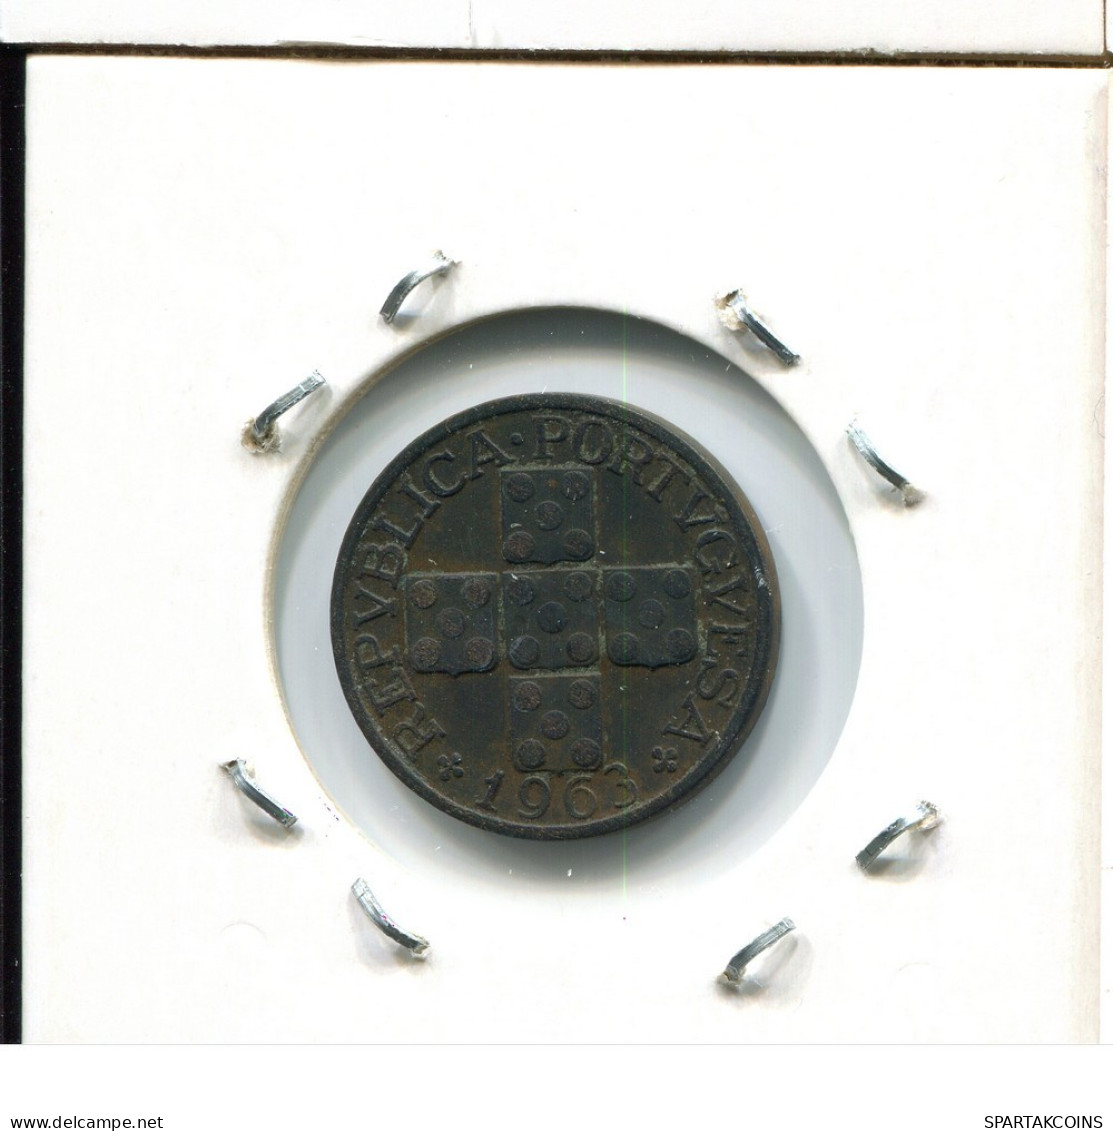 20 CENTAVOS 1963 PORTUGAL Coin #AT283.U.A - Portogallo